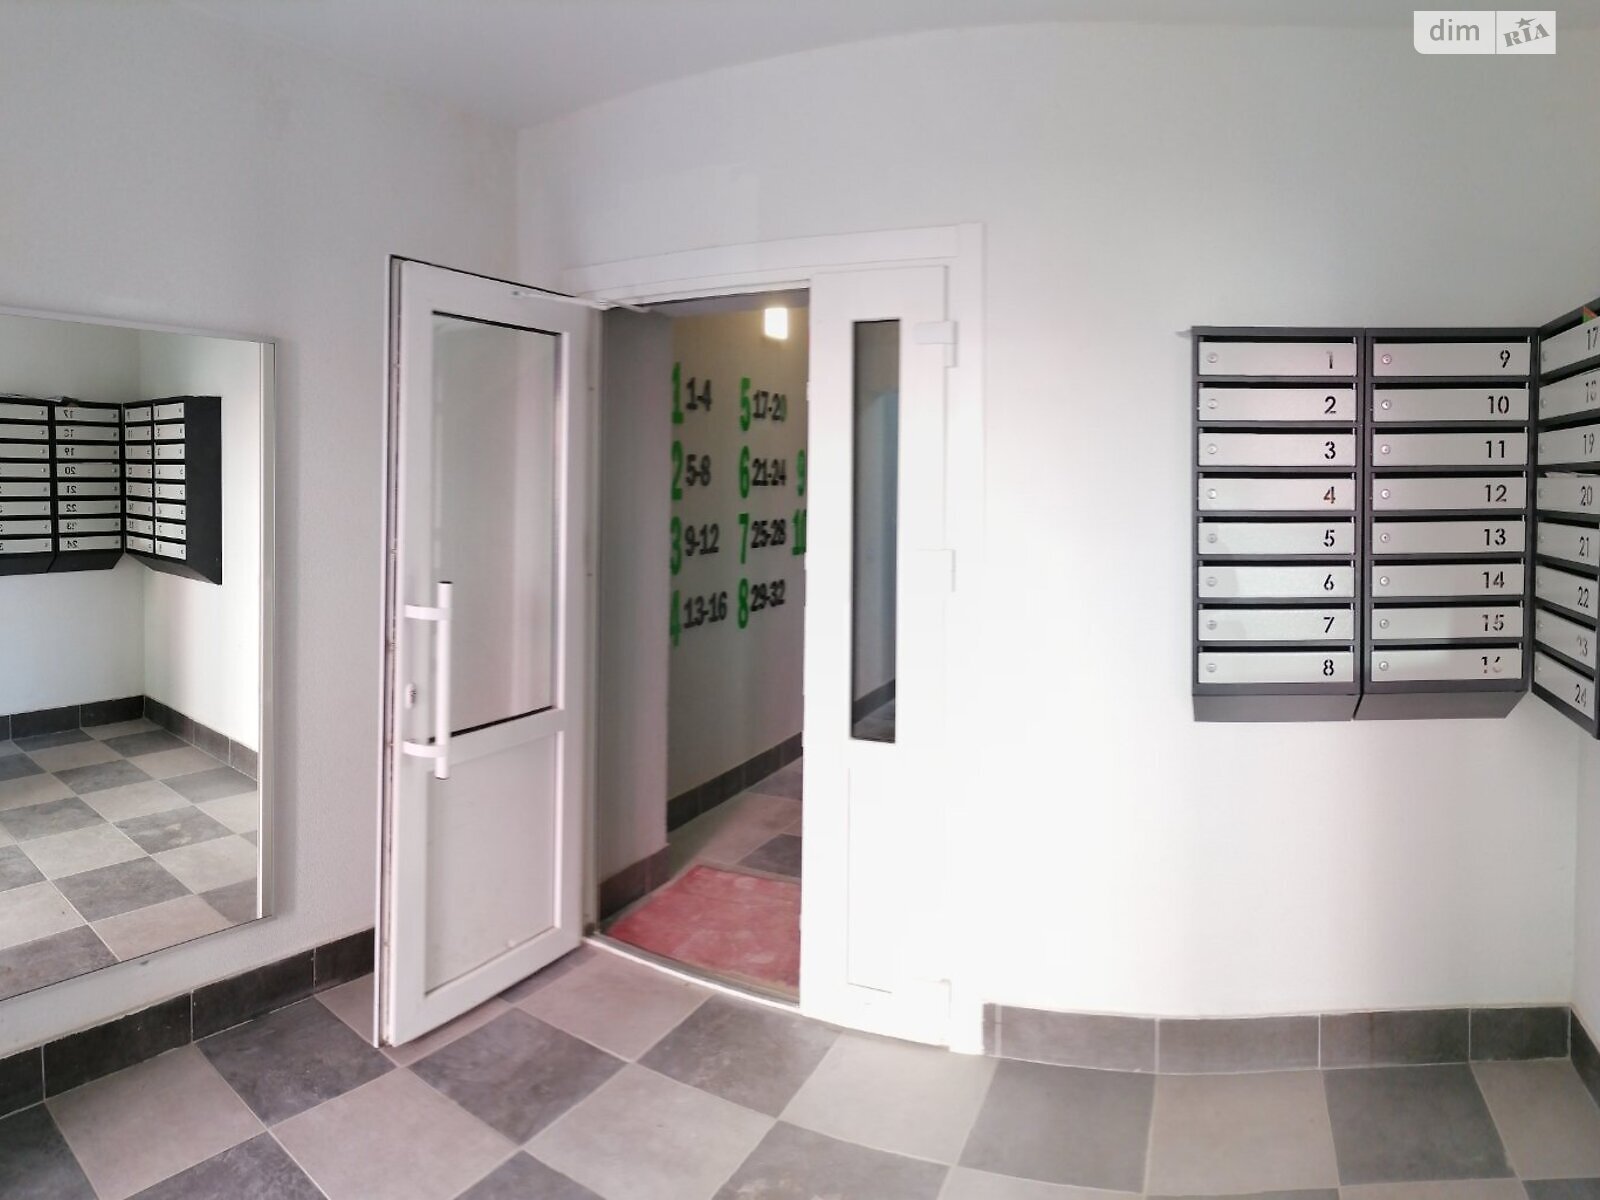 Продажа трехкомнатной квартиры в Луцке, на ул. Конякина 3А, 3Б, 3В, фото 1